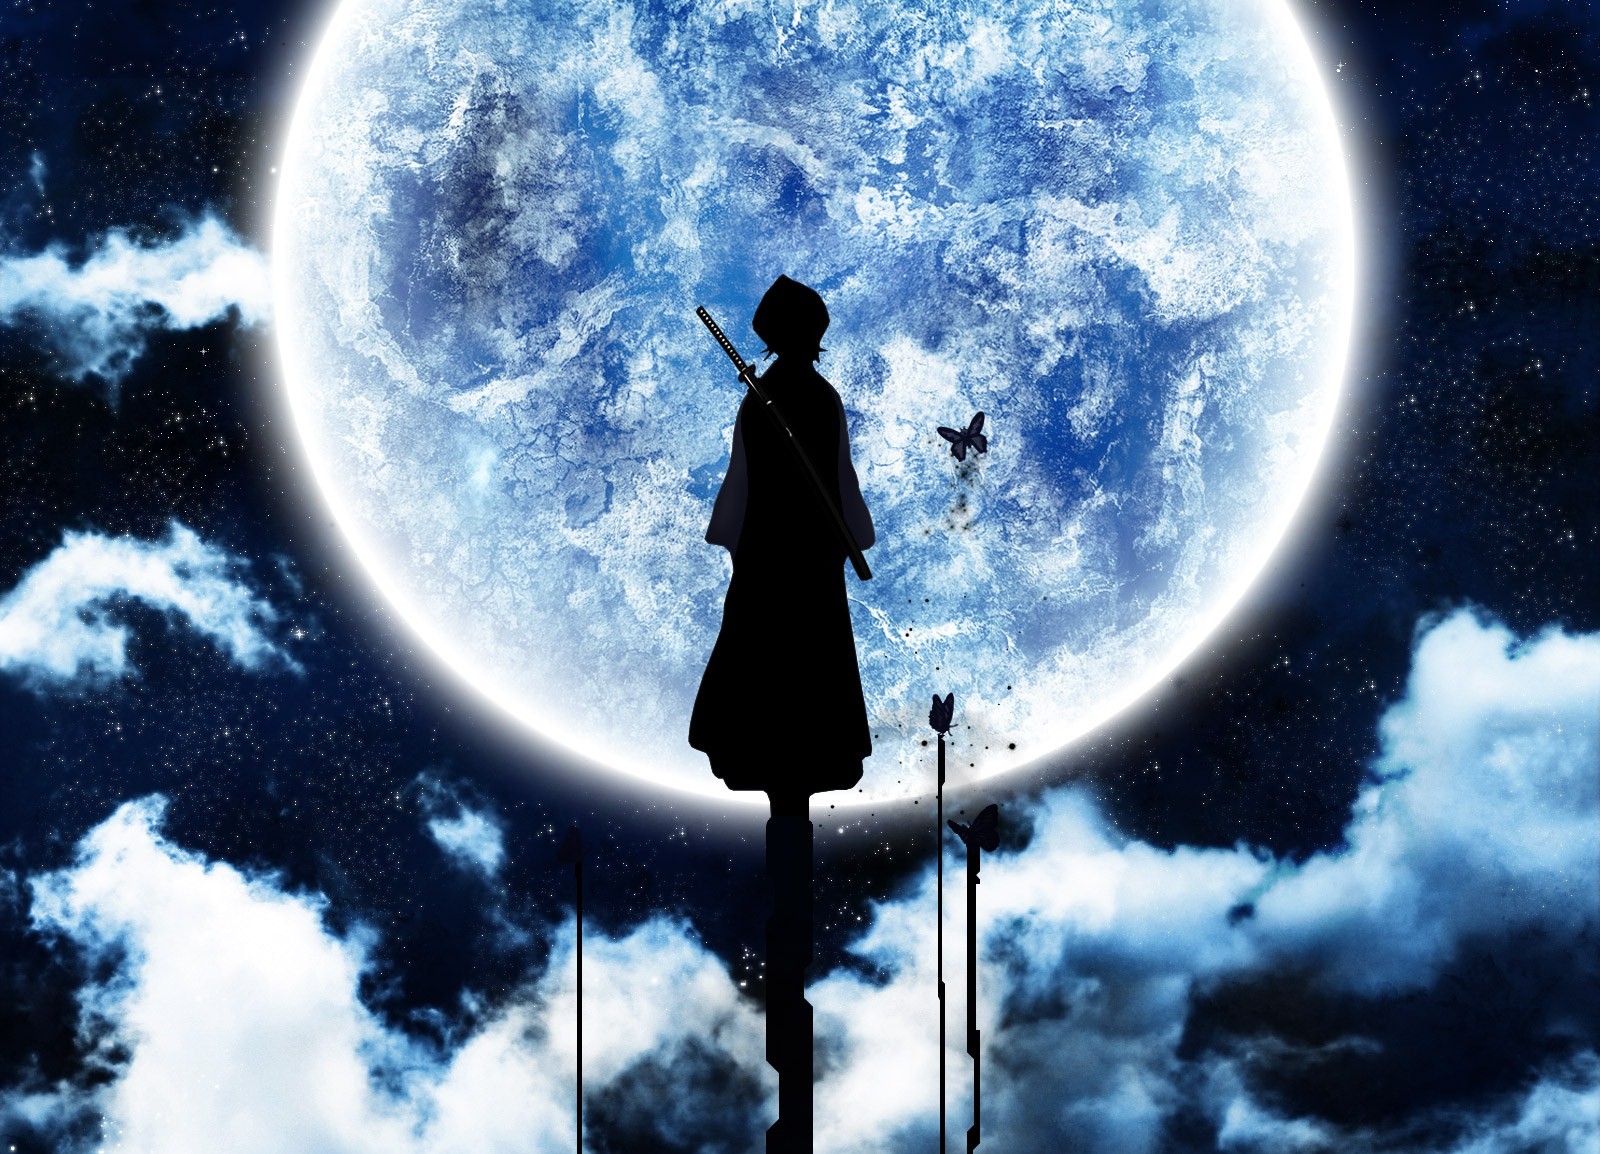 33+] Full Moon Anime Wallpaper - WallpaperSafari